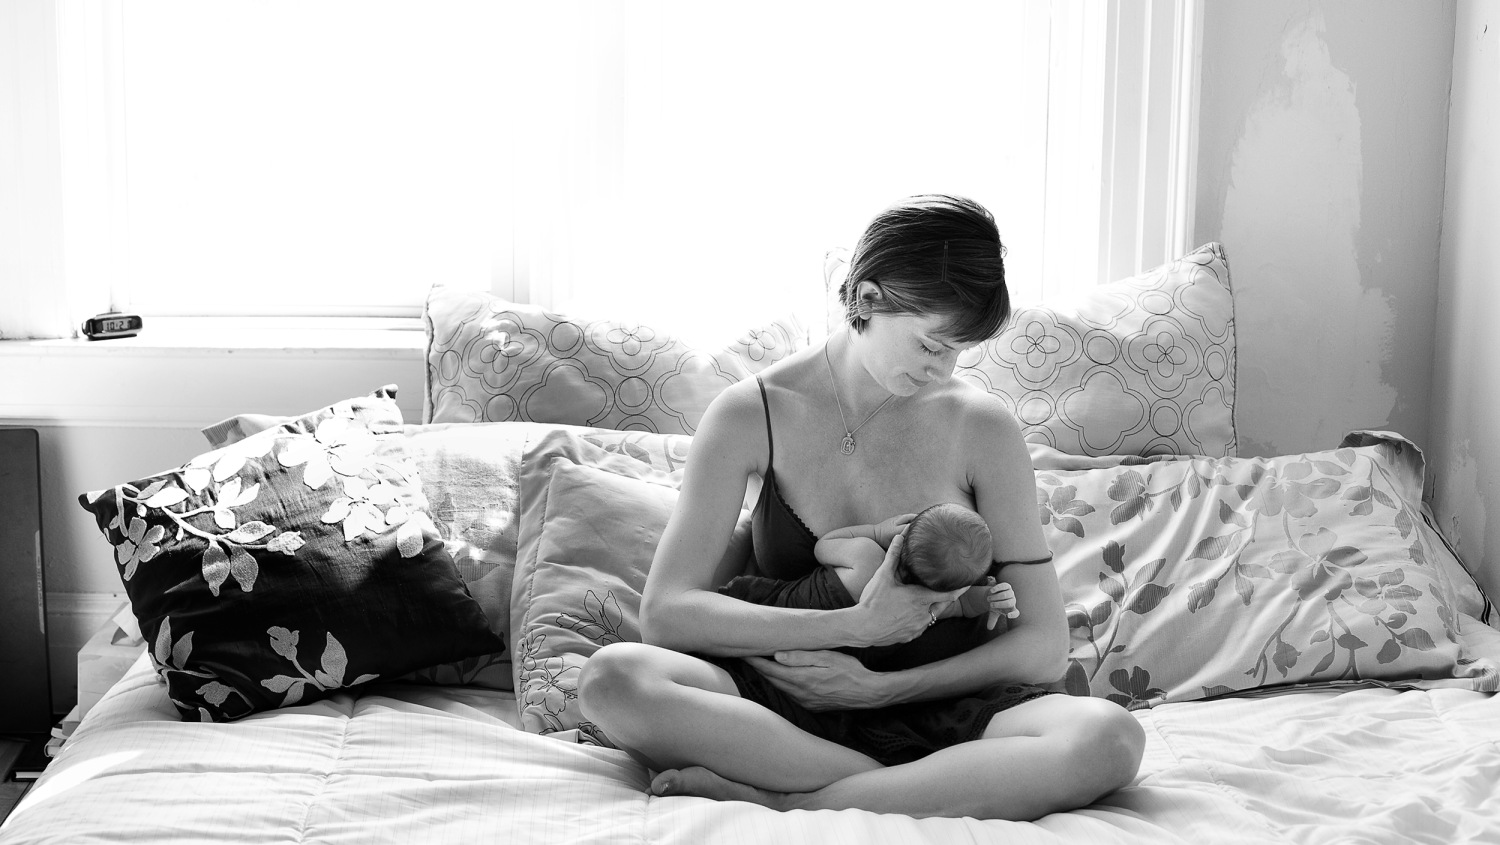 Naked Black Sleeping - Breast-feeding selfies, portraits, let new moms flaunt nursing pride